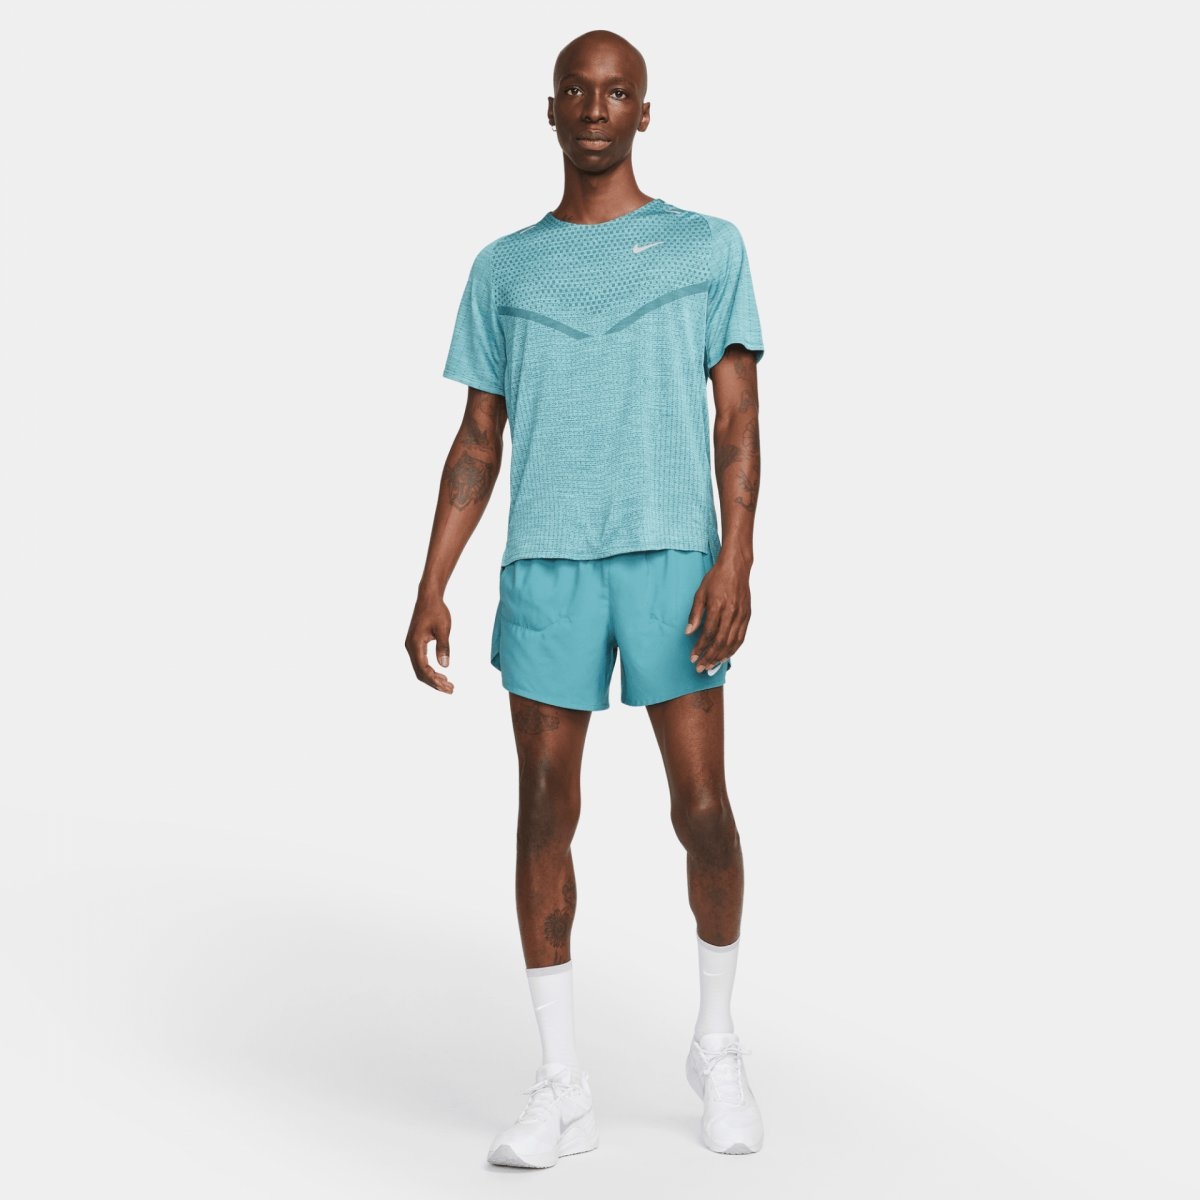 Nike Man's T-shirt Dri-Fit Adv